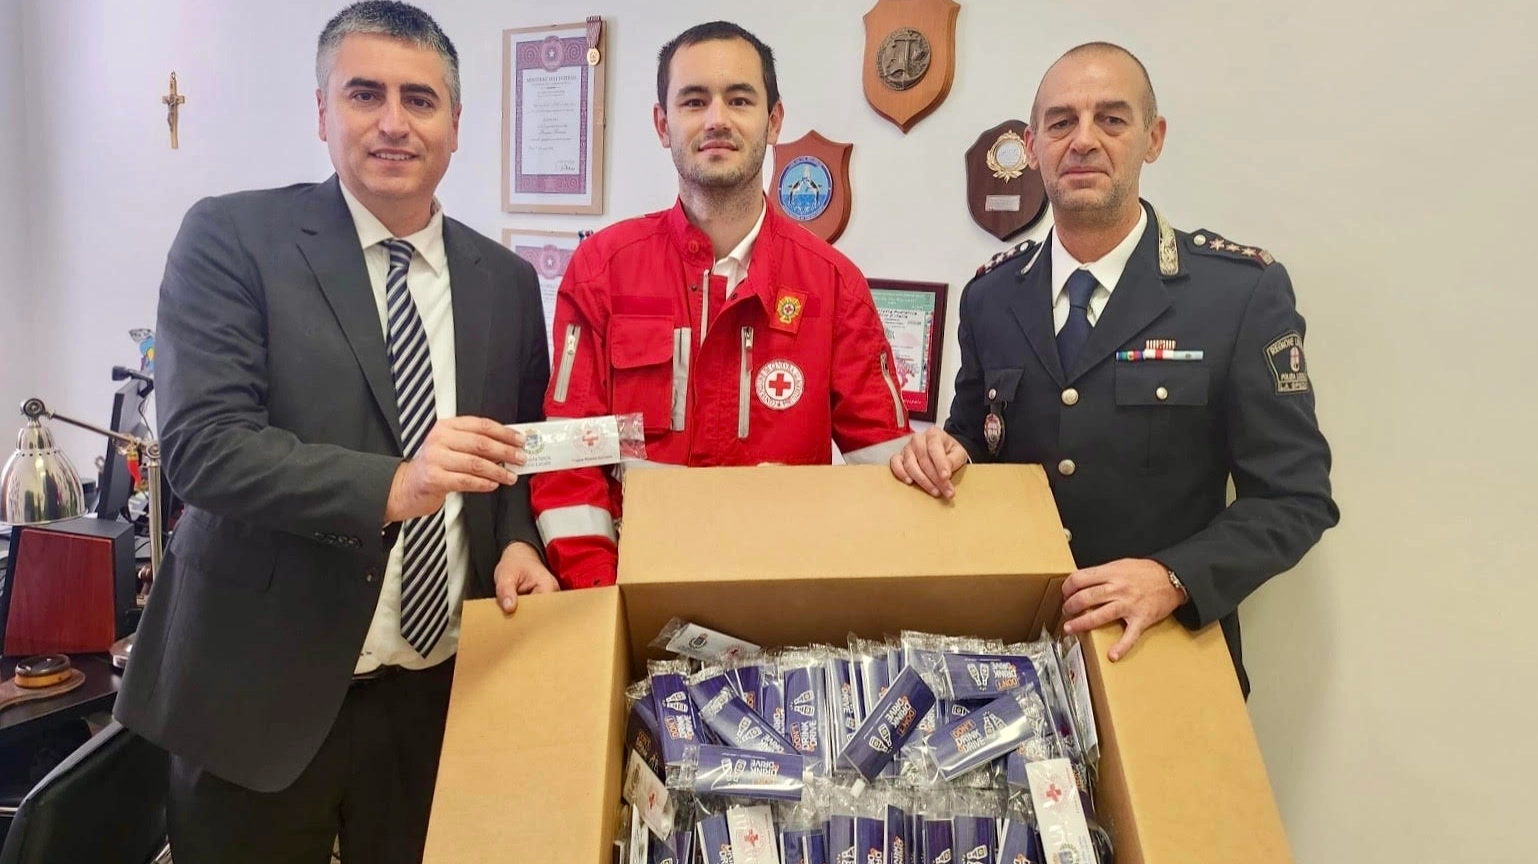 L'assessore Guerri e il comandante Bertoneri l'hanno consegnati alla Croce Rossa Italiana per il progetto di educazione stradale